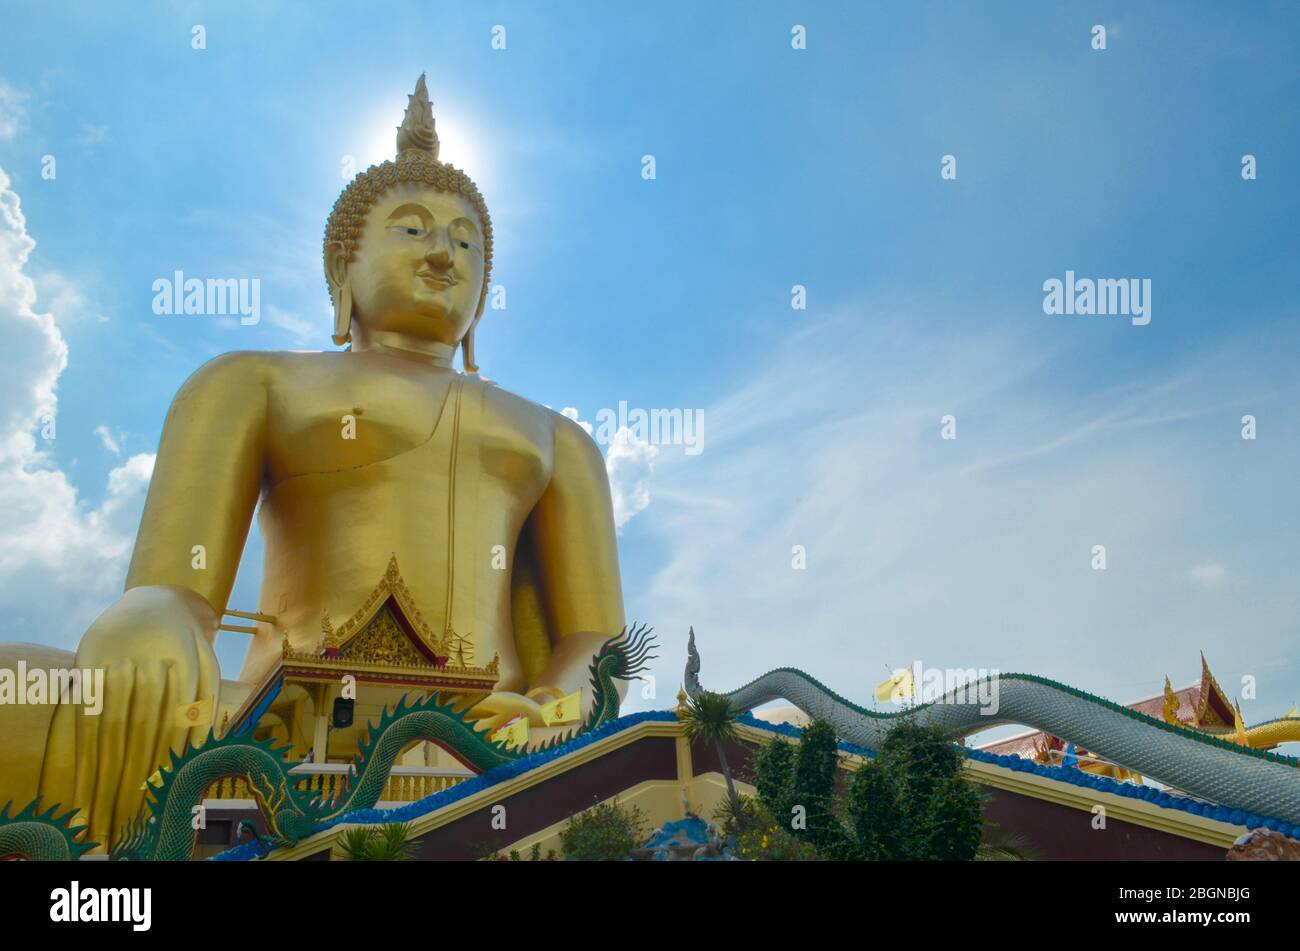 Tempel ist Ang Thong Stadt und haben große Buddha-Statue in Thailand. Stockfoto